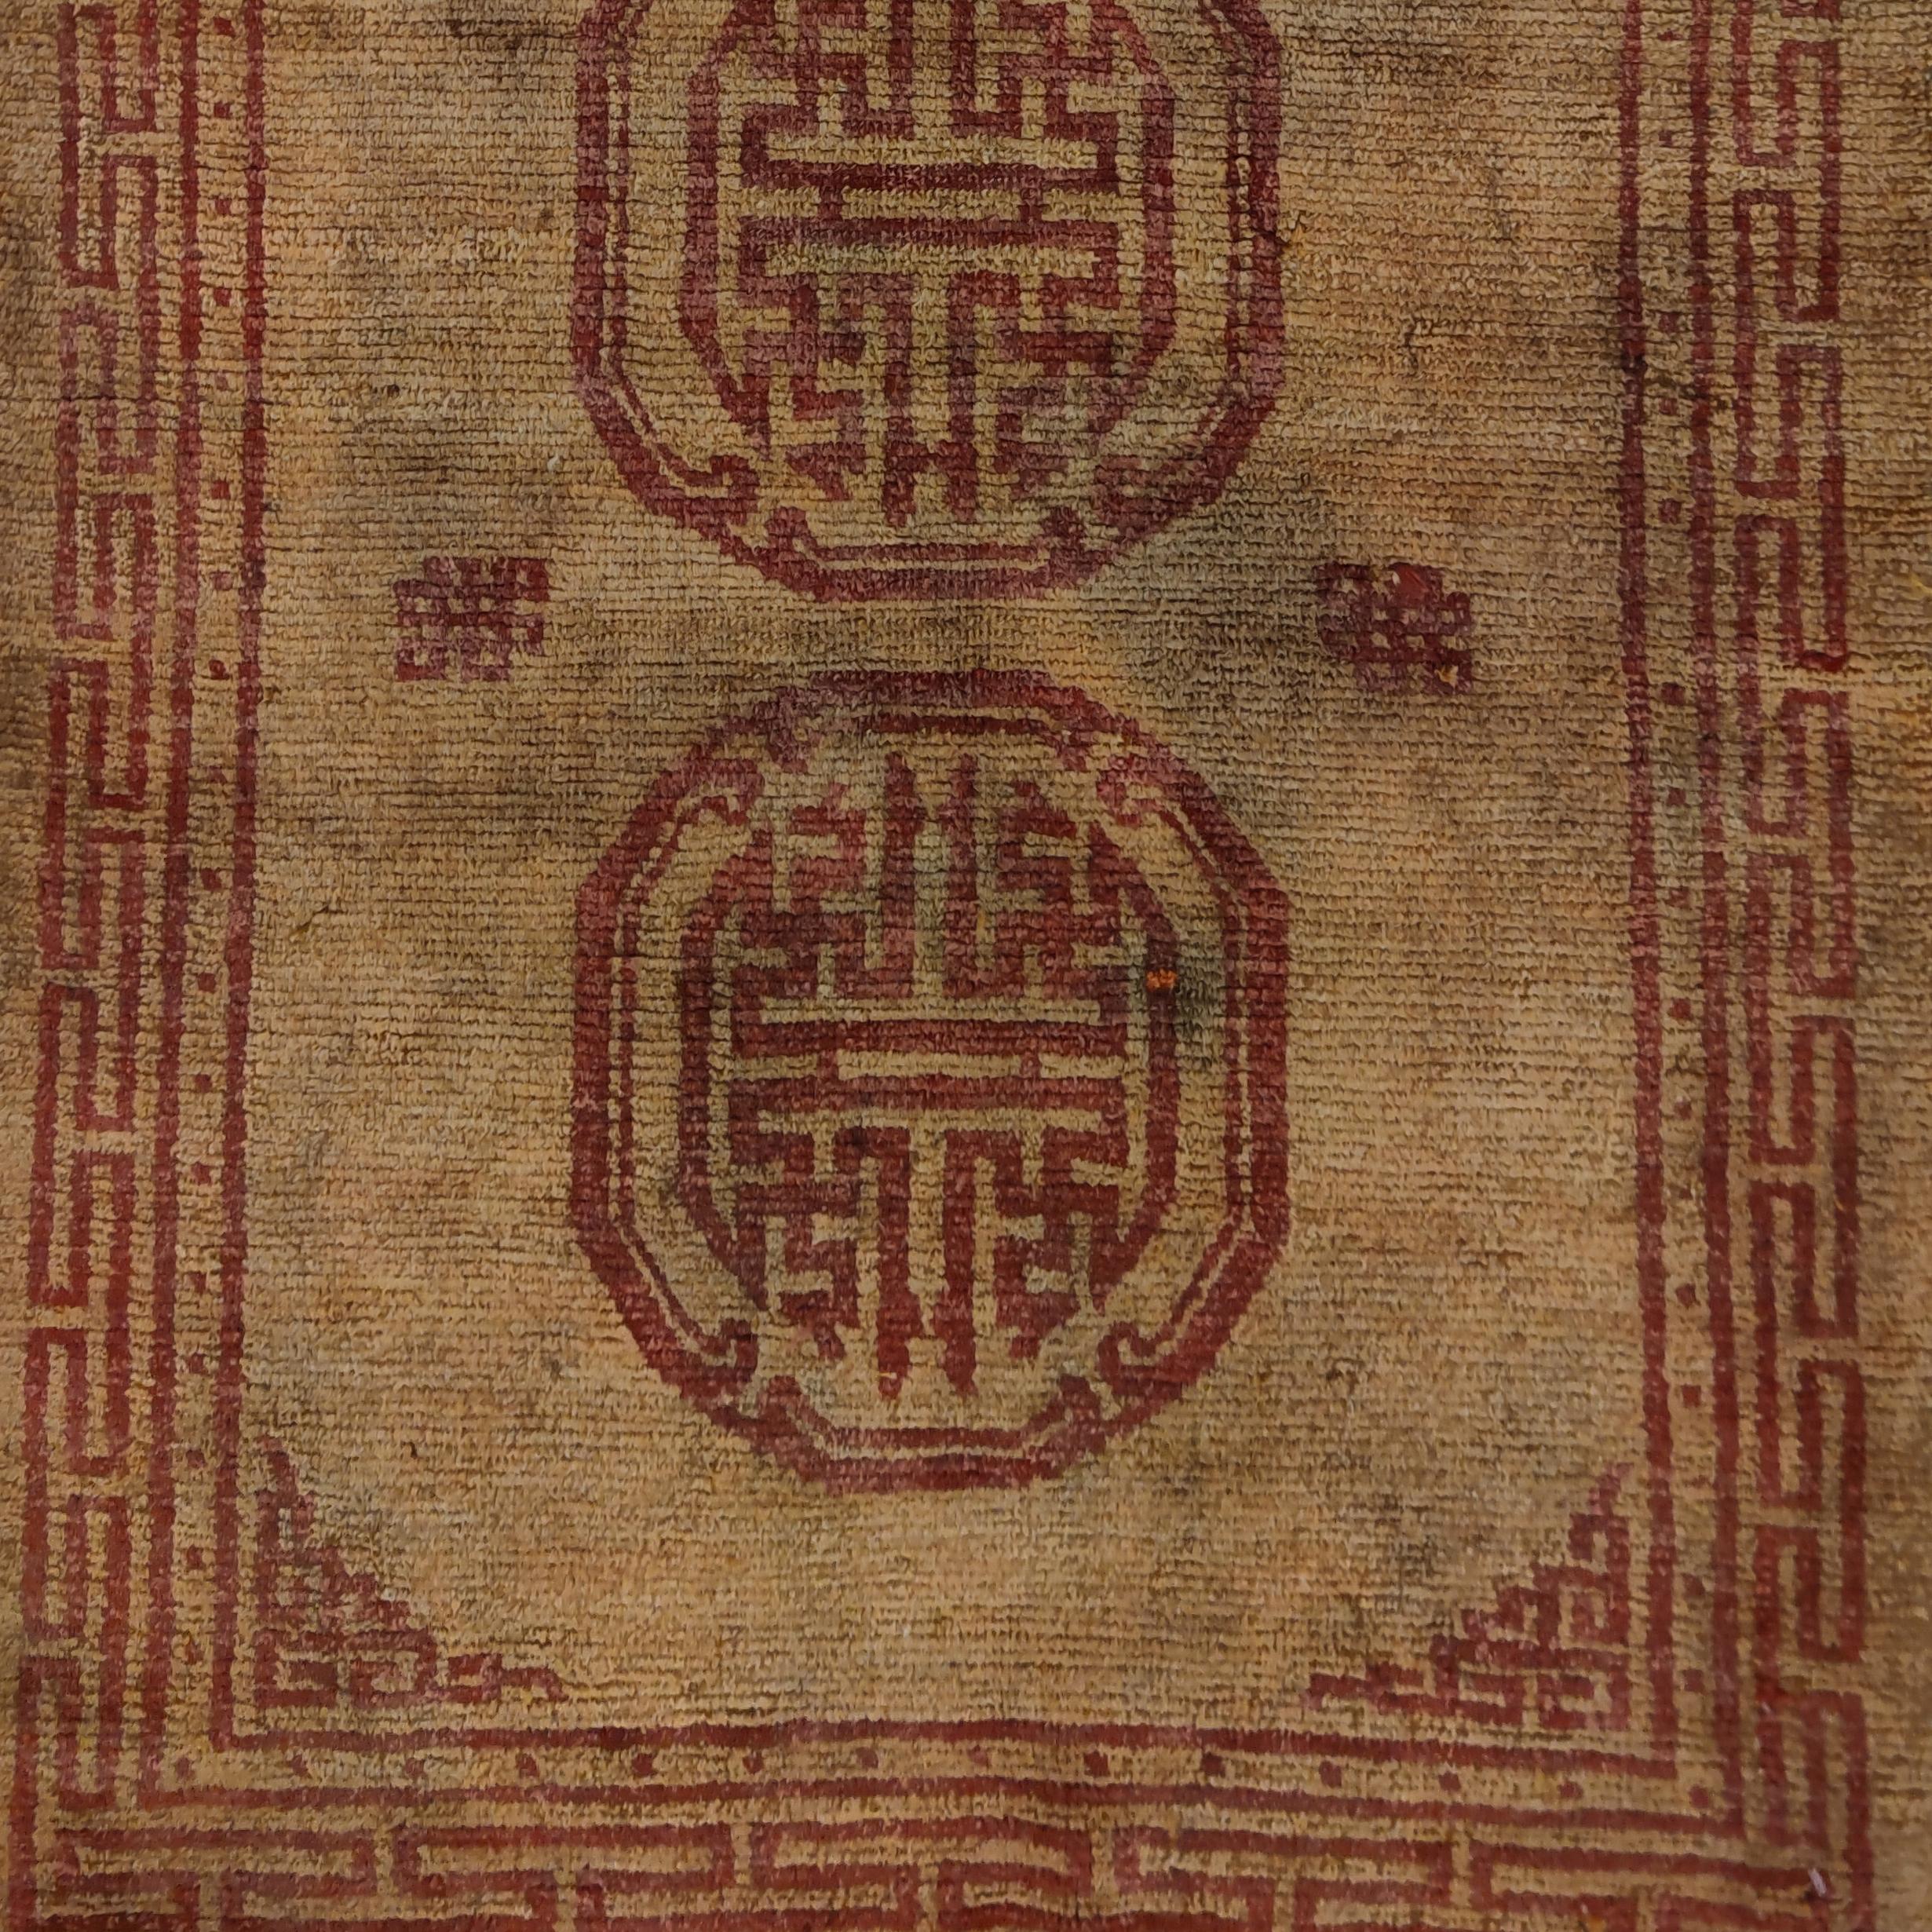 Ein seltener und einzigartiger tibetischer Teppich, der sich durch einen sanften gelben Hintergrund auszeichnet, auf dem sich ein Muster in hellem Rot befindet, das aus drei Mandalas, Symbolen des Universums, besteht. Teppiche in diesen